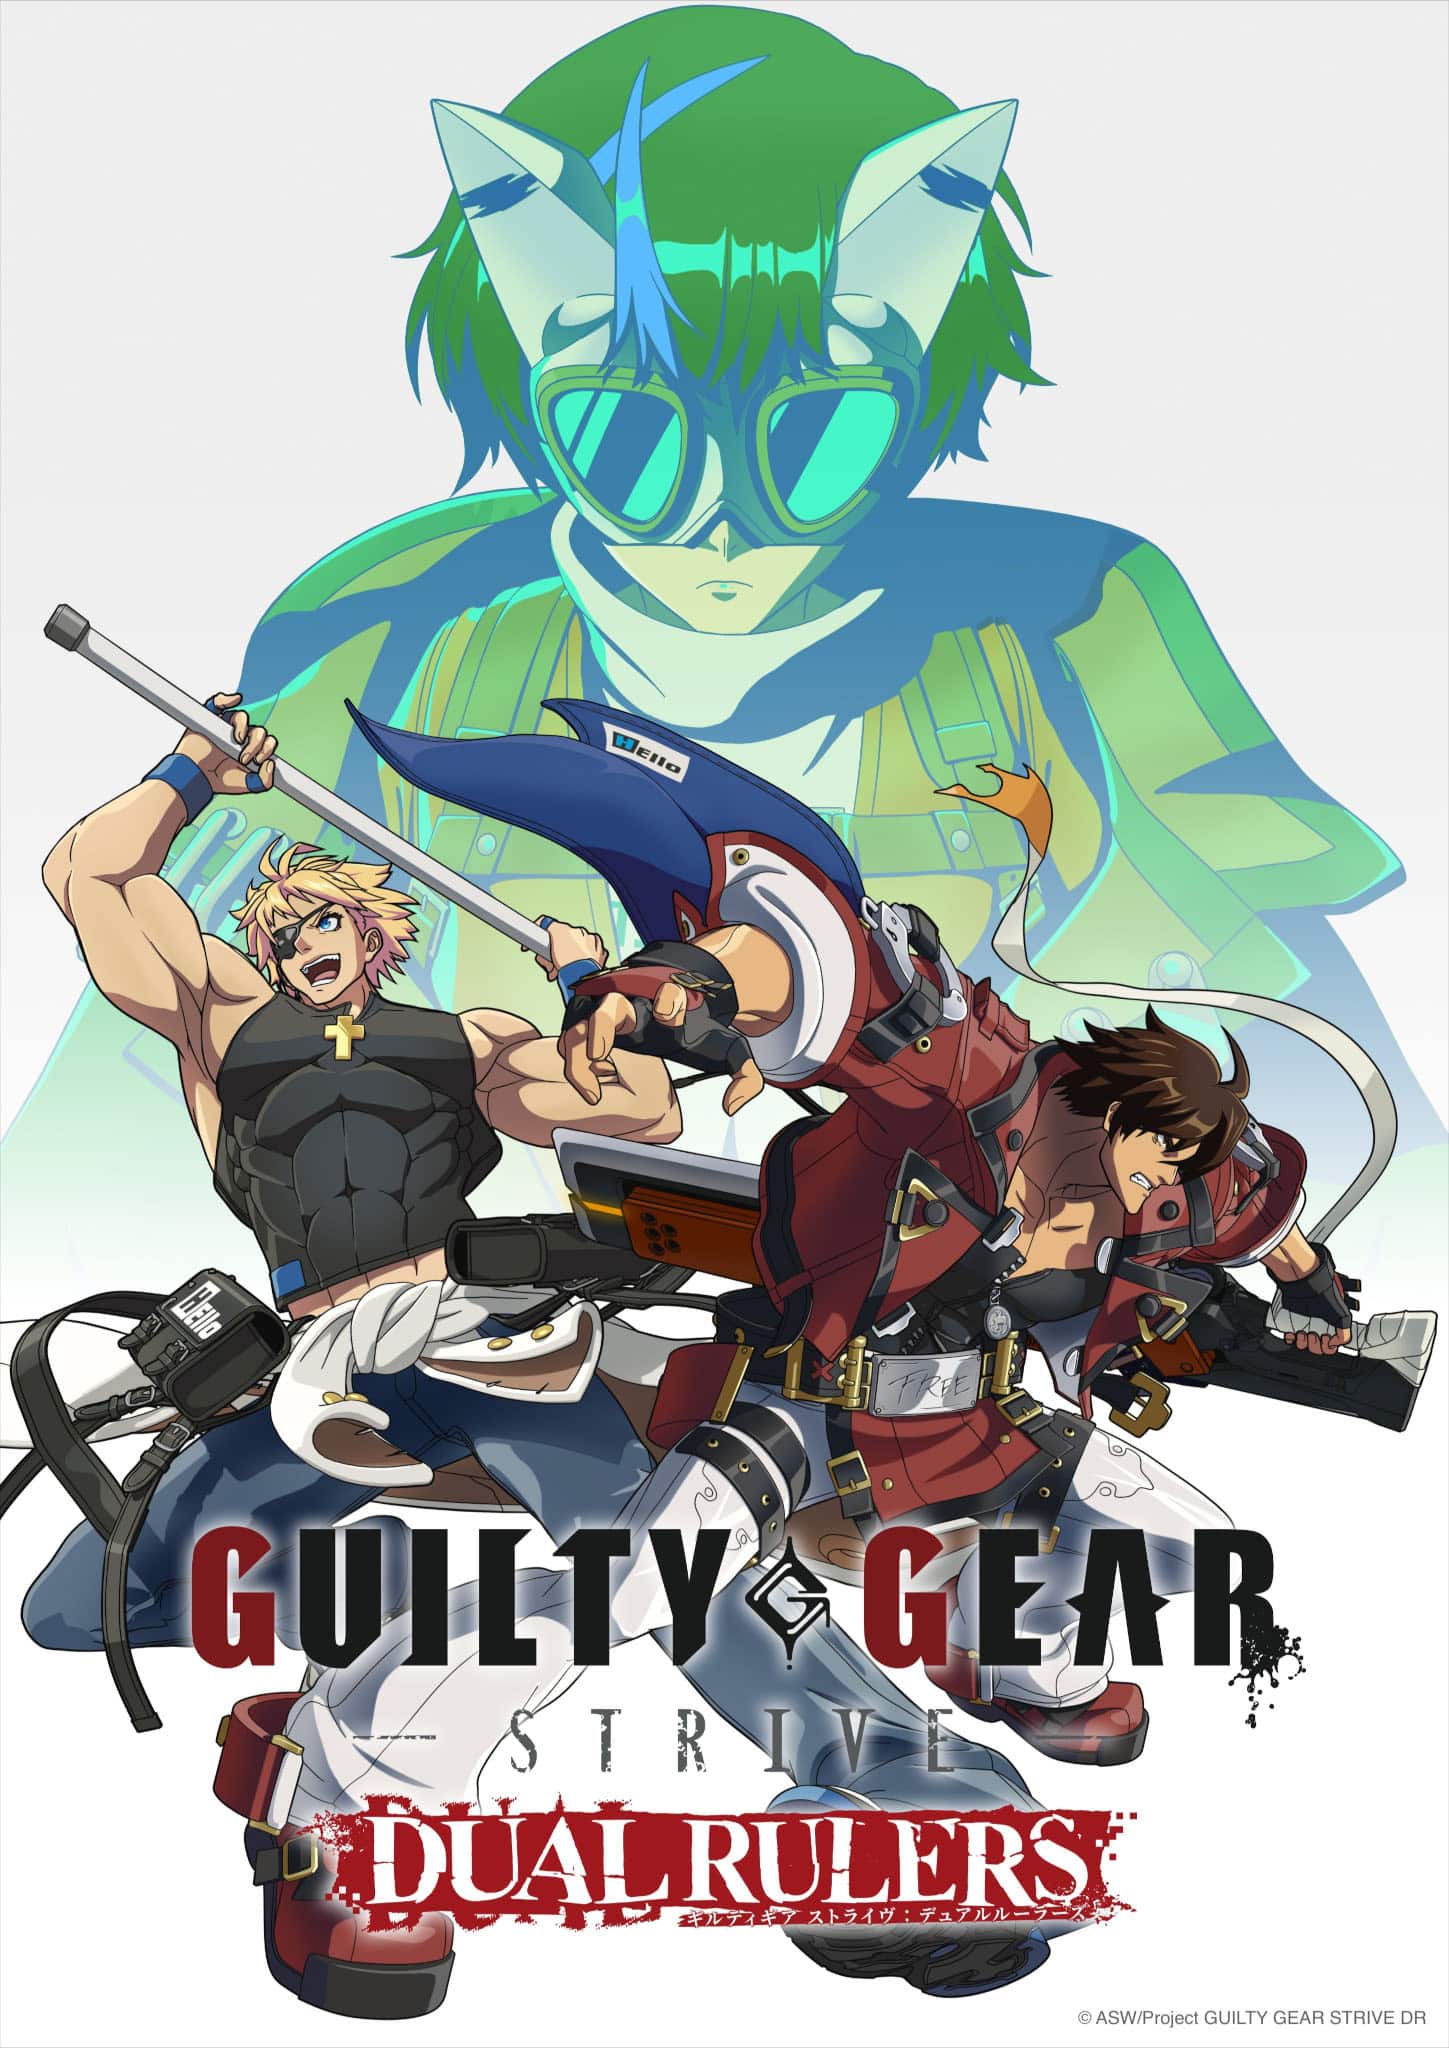 Premier visuel pour l'anime GUILTY GEAR STRIVE : DUAL RULERS.